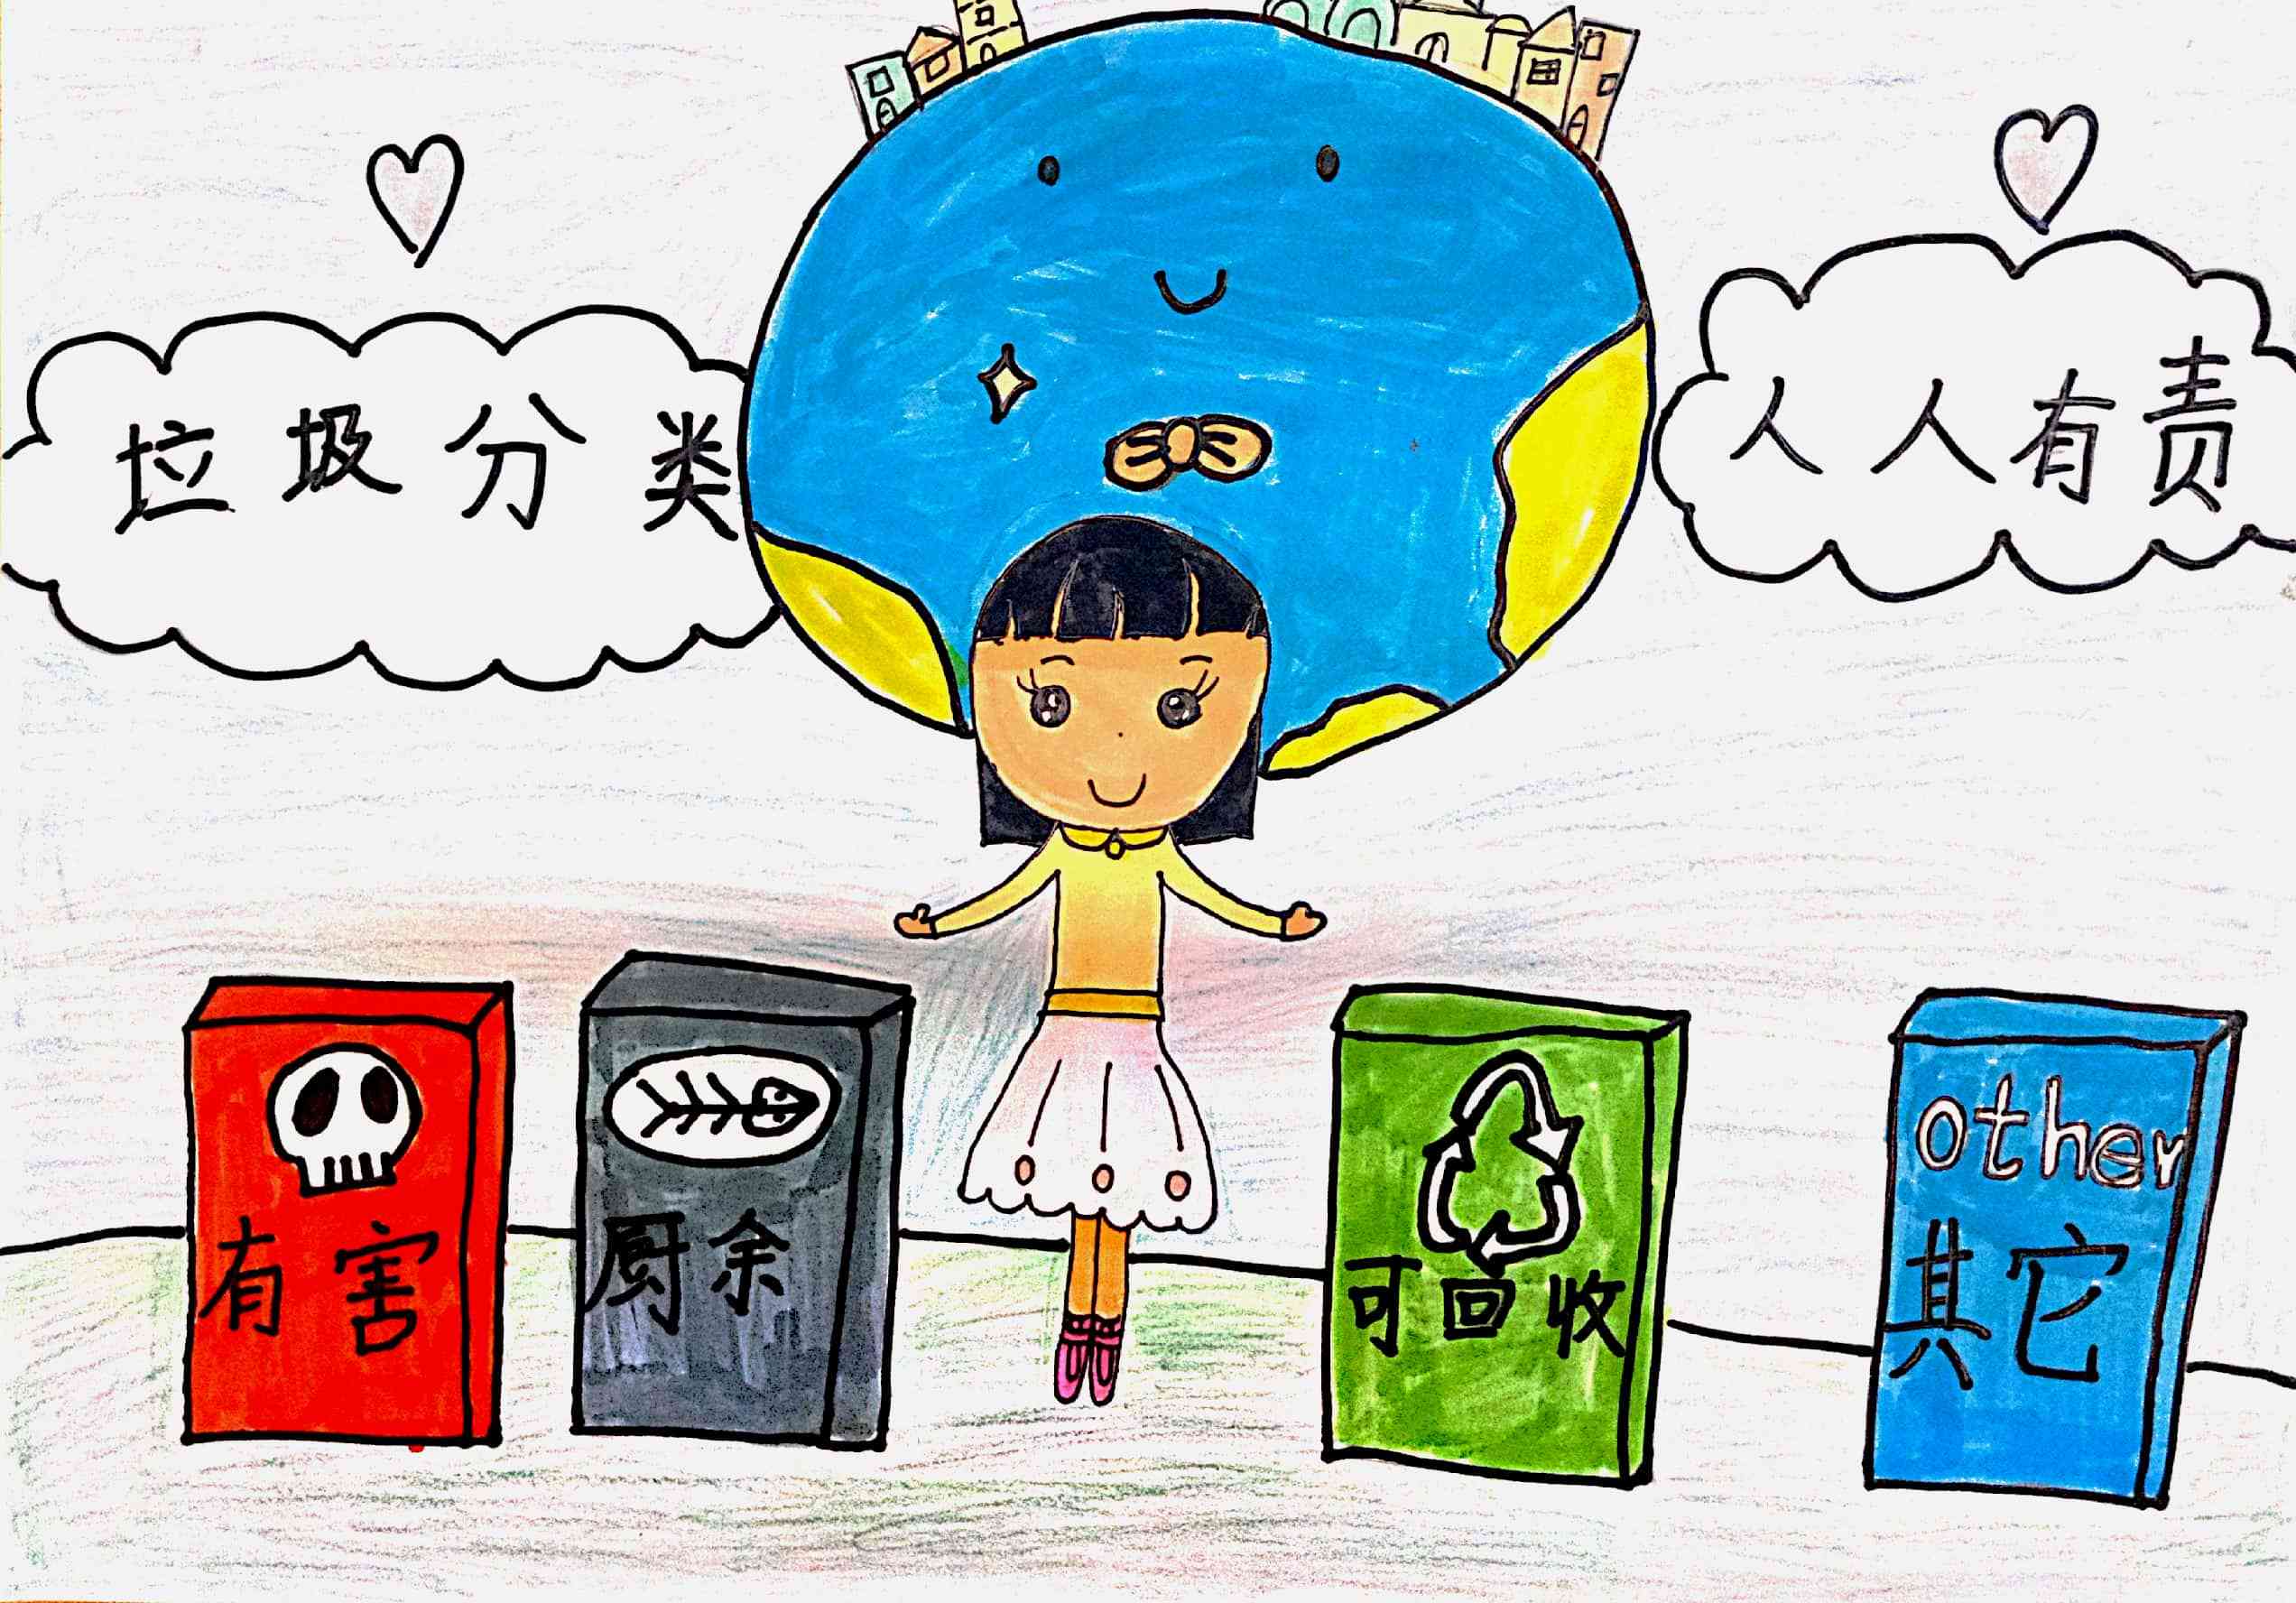 苏州:垃圾分类主题绘画 倡导绿色环保理念